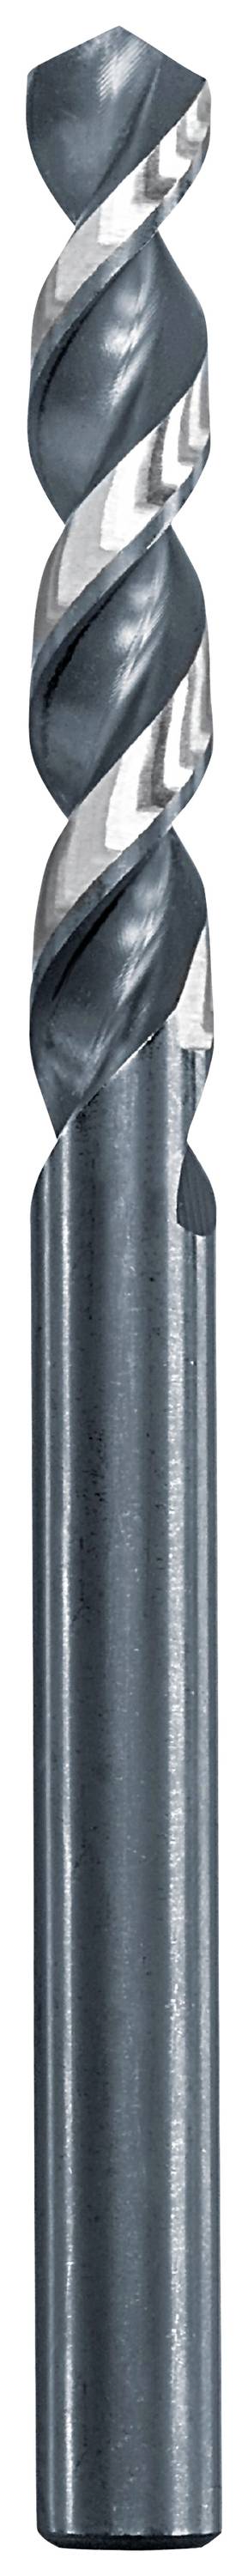 KWB 258690 Metall-Spiralbohrer 9 mm Gesamtlänge 125 mm 1 St.